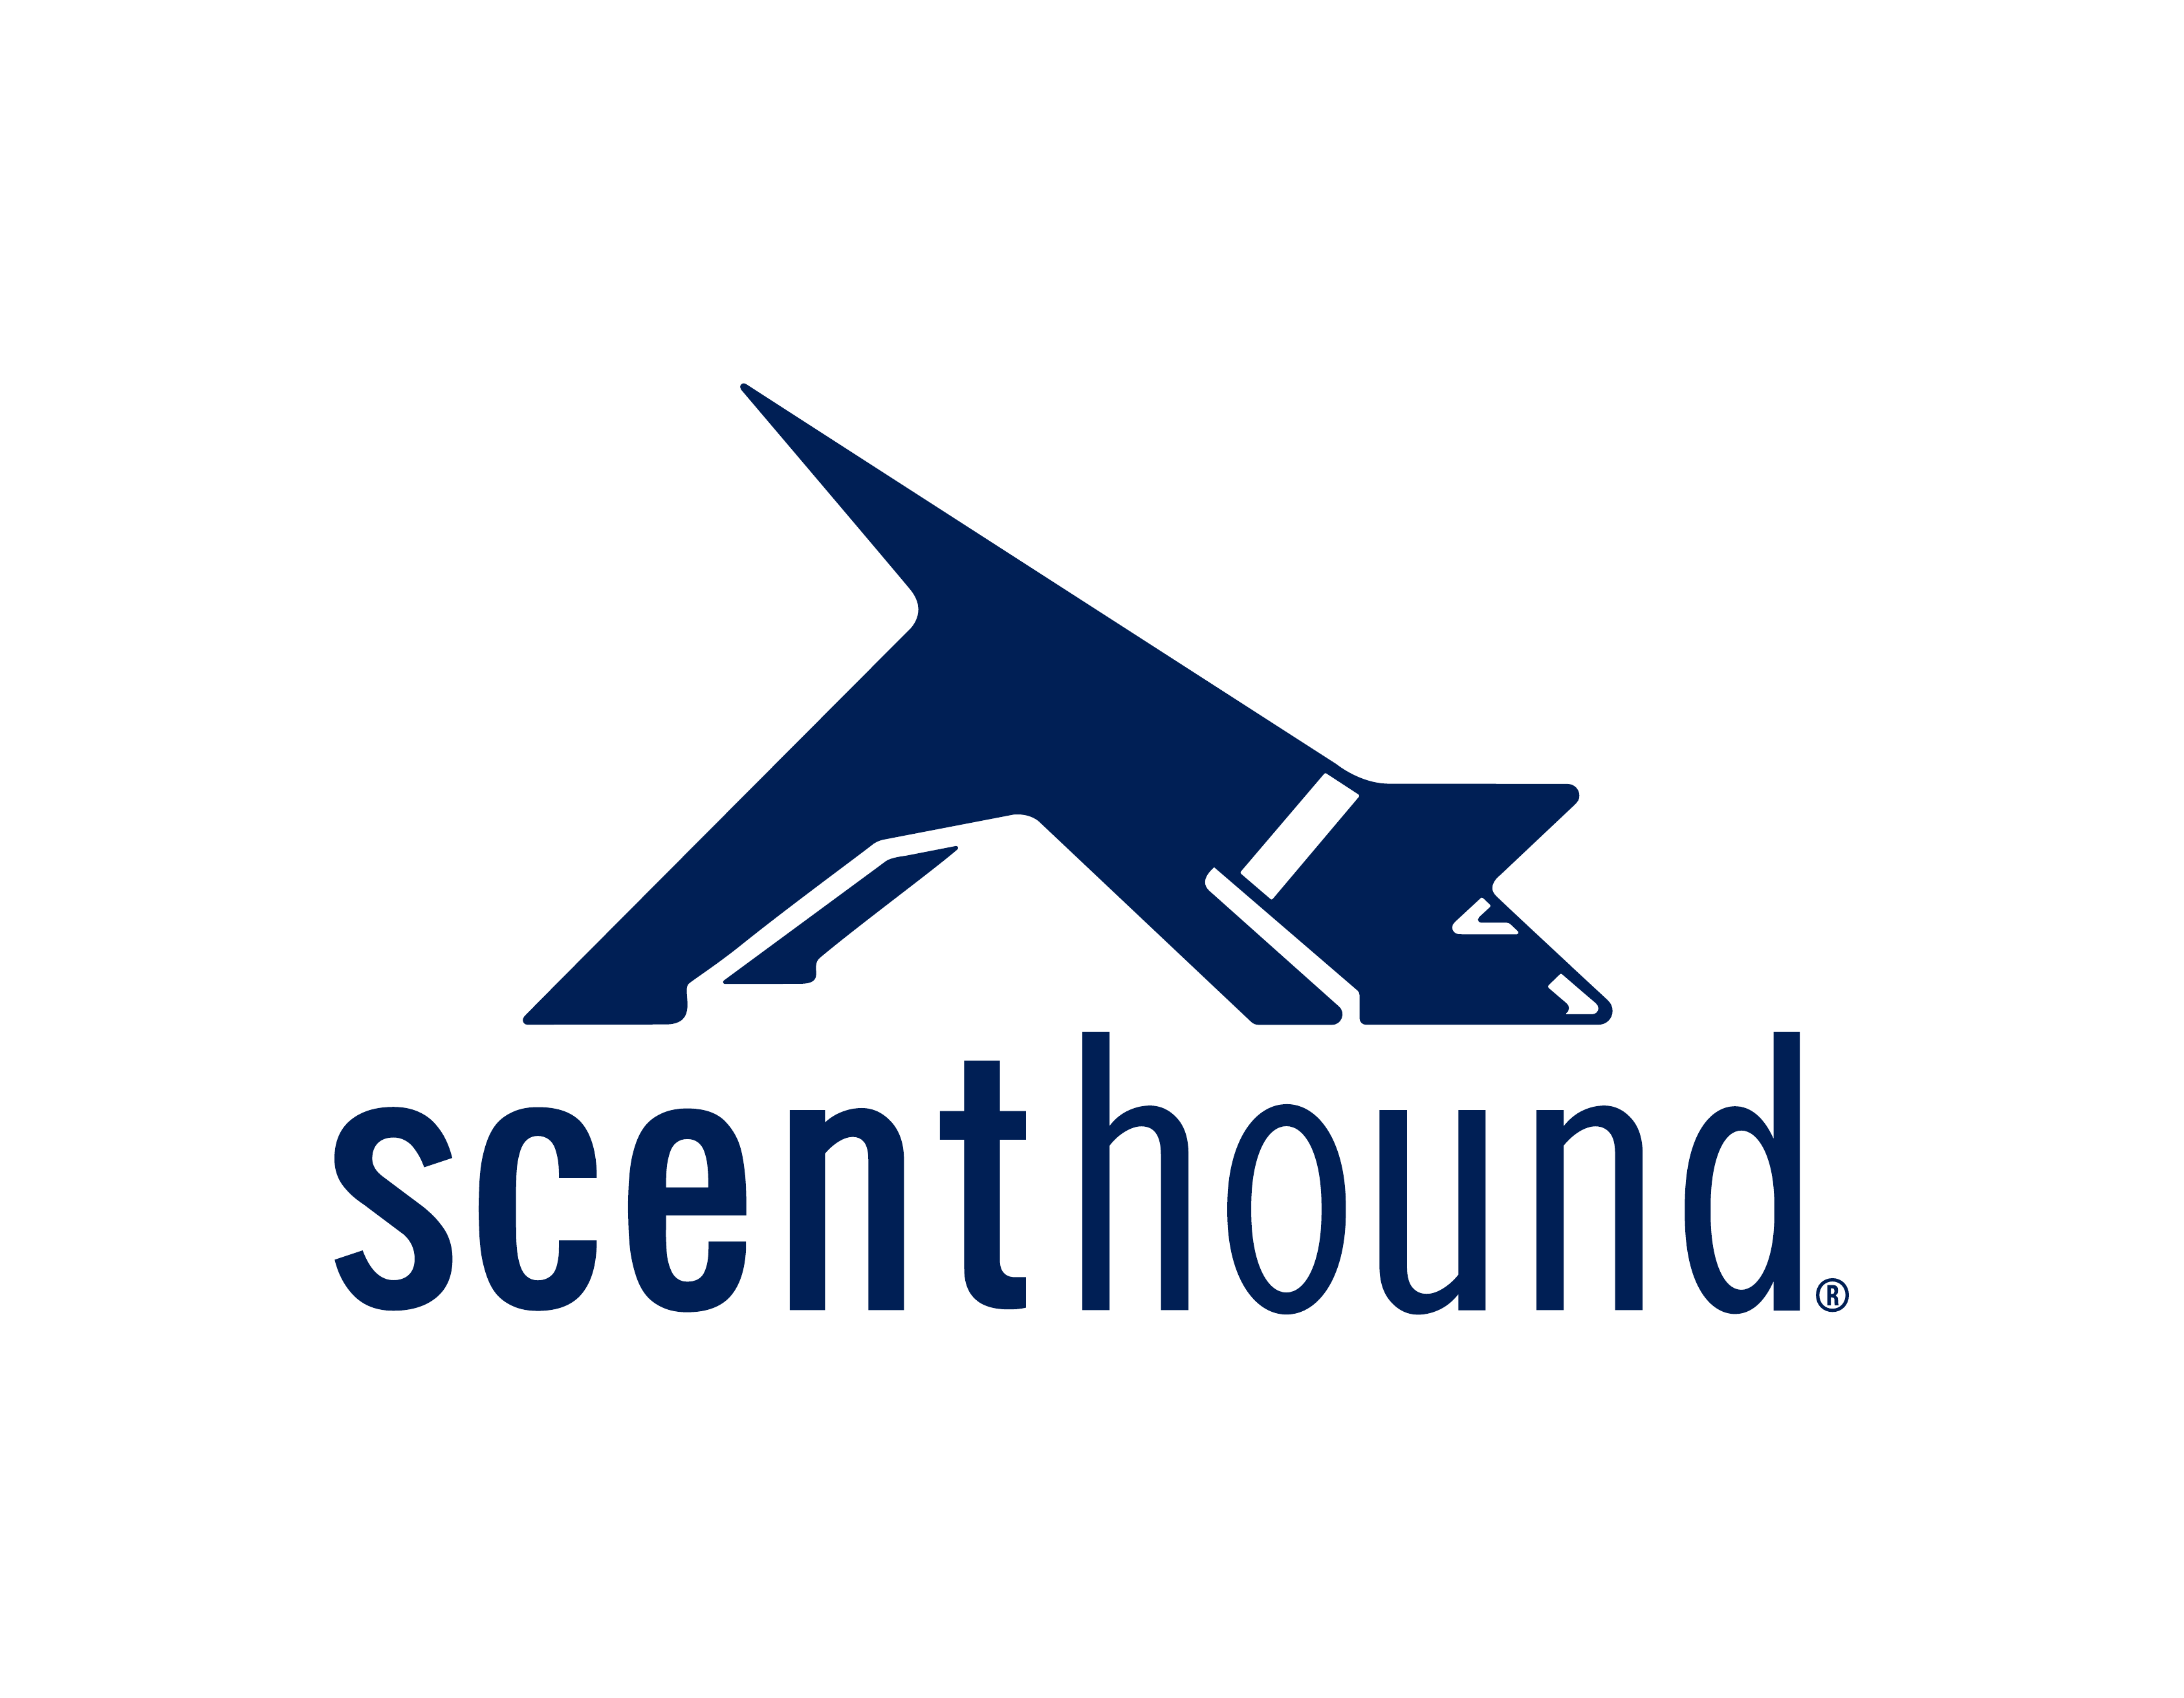 scenthound logo